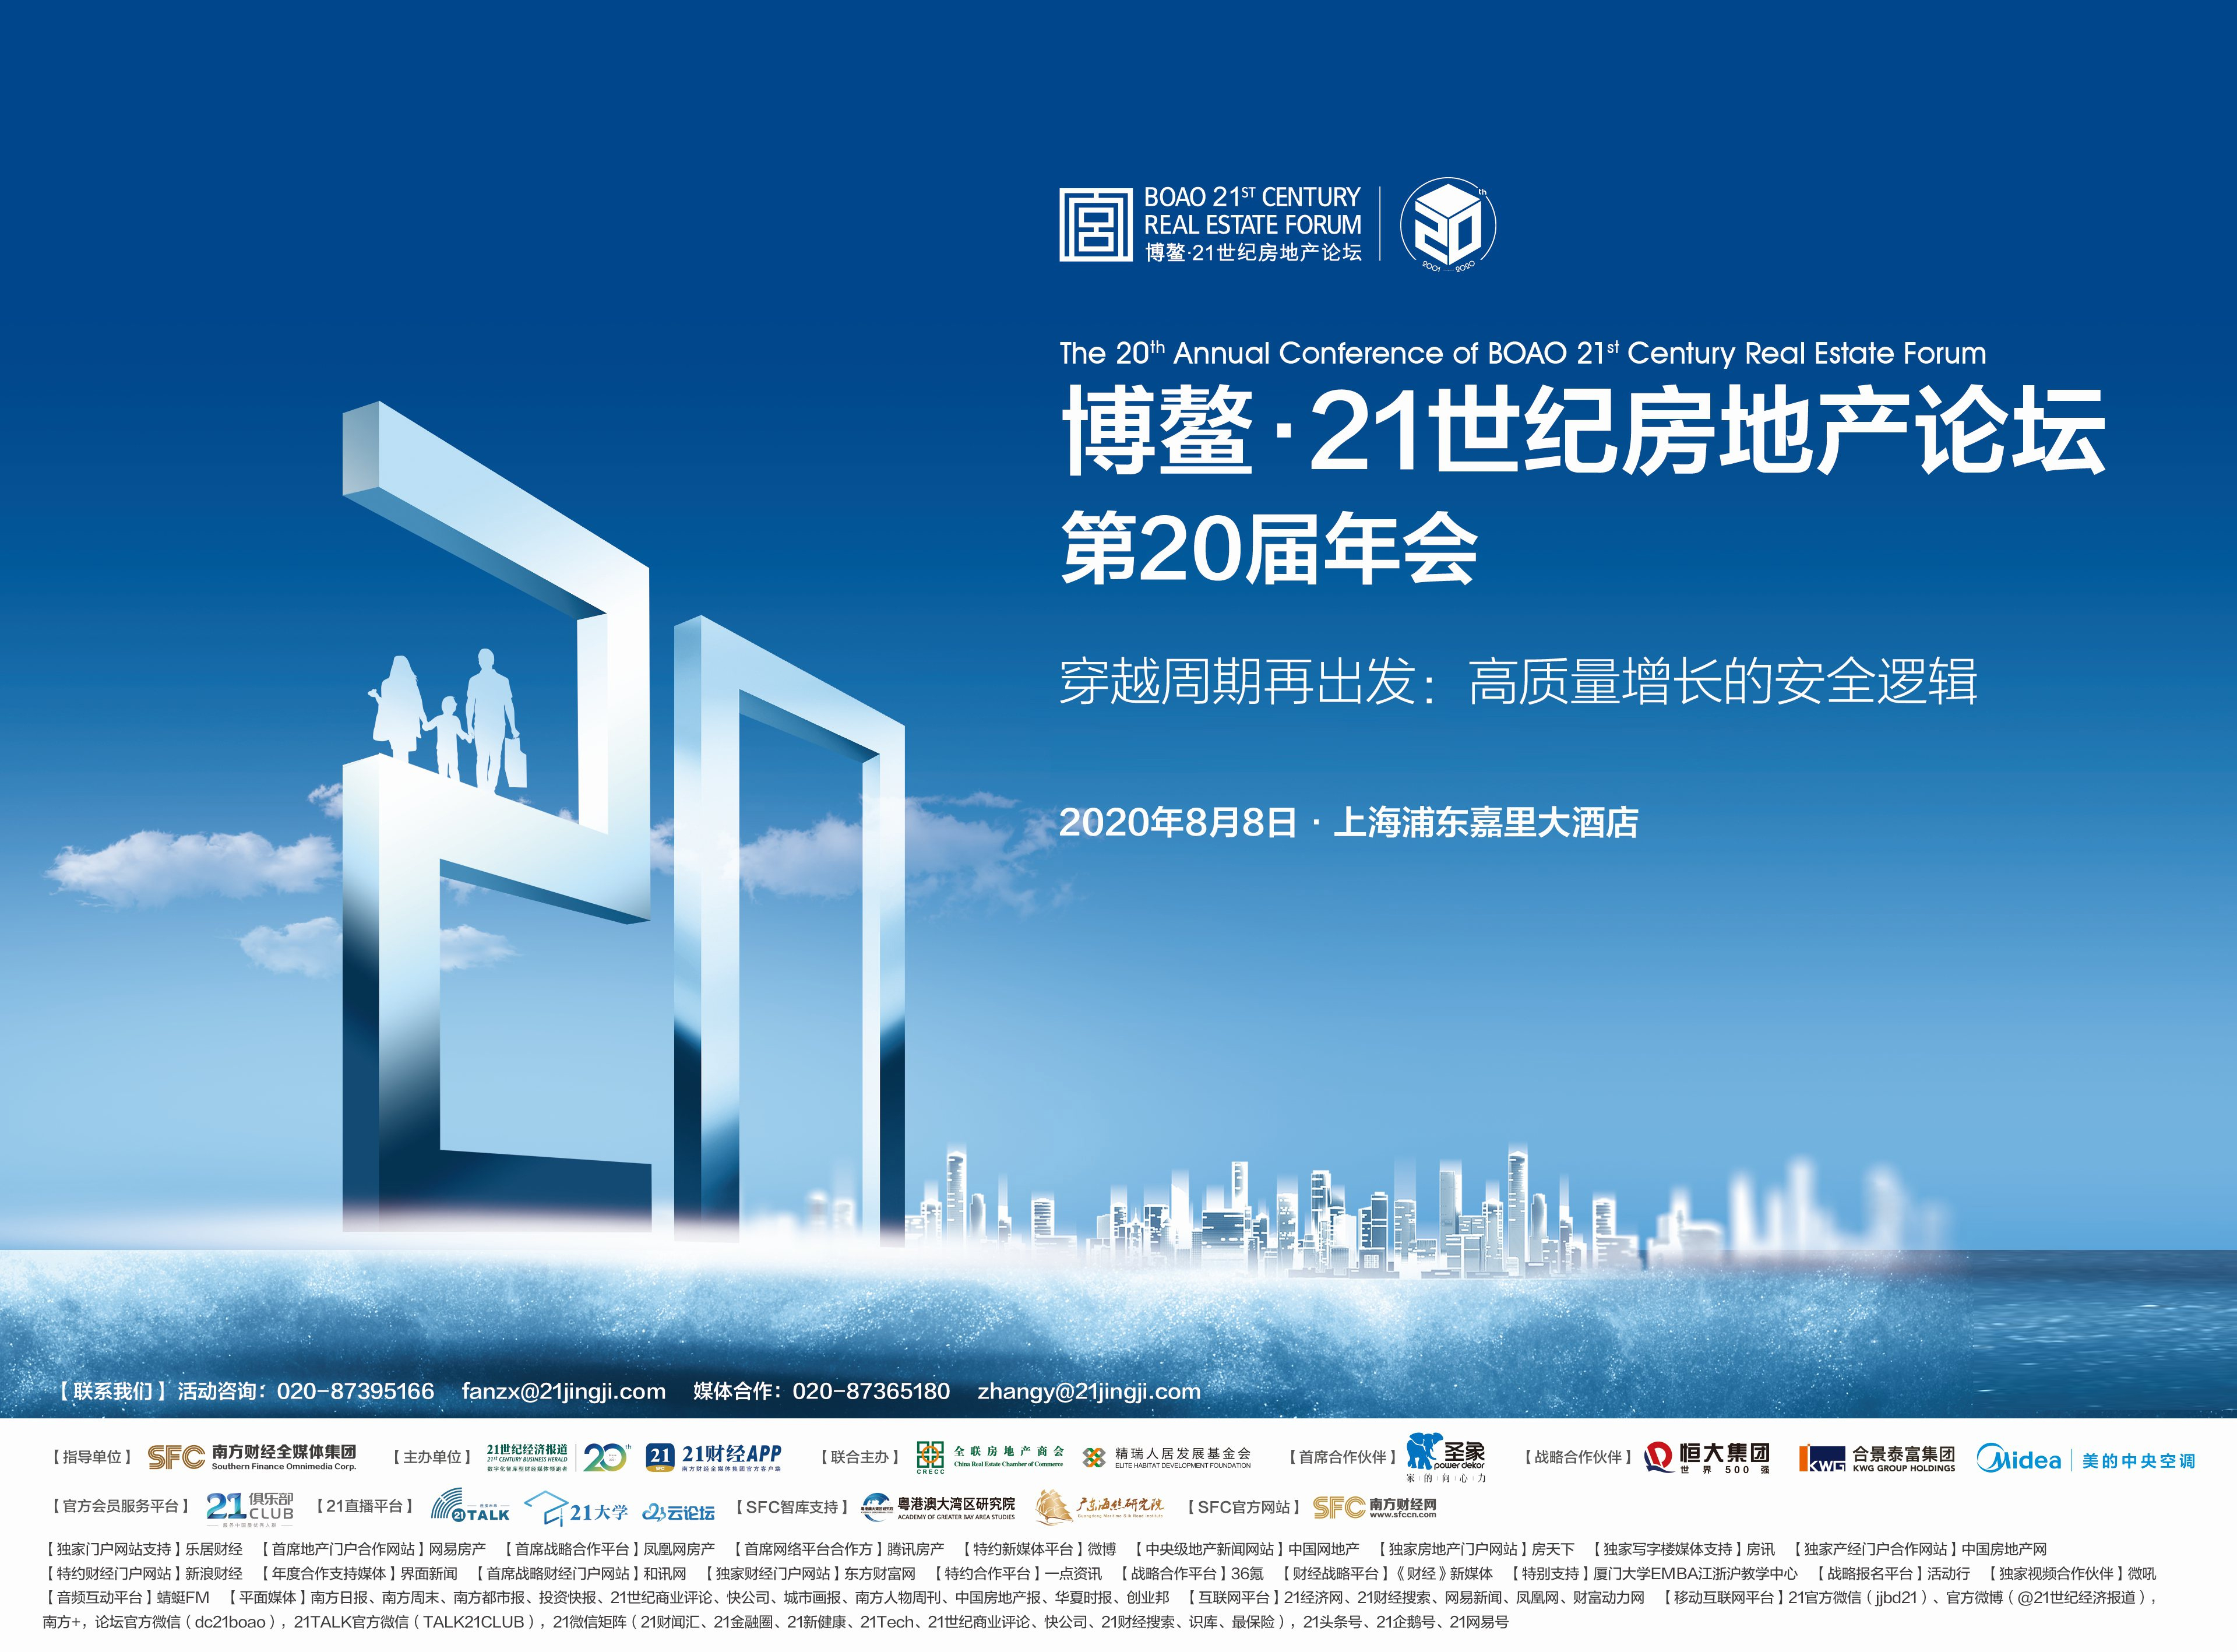 博鰲21世紀房地産論壇第20屆年會盛大開啟-中國網地産